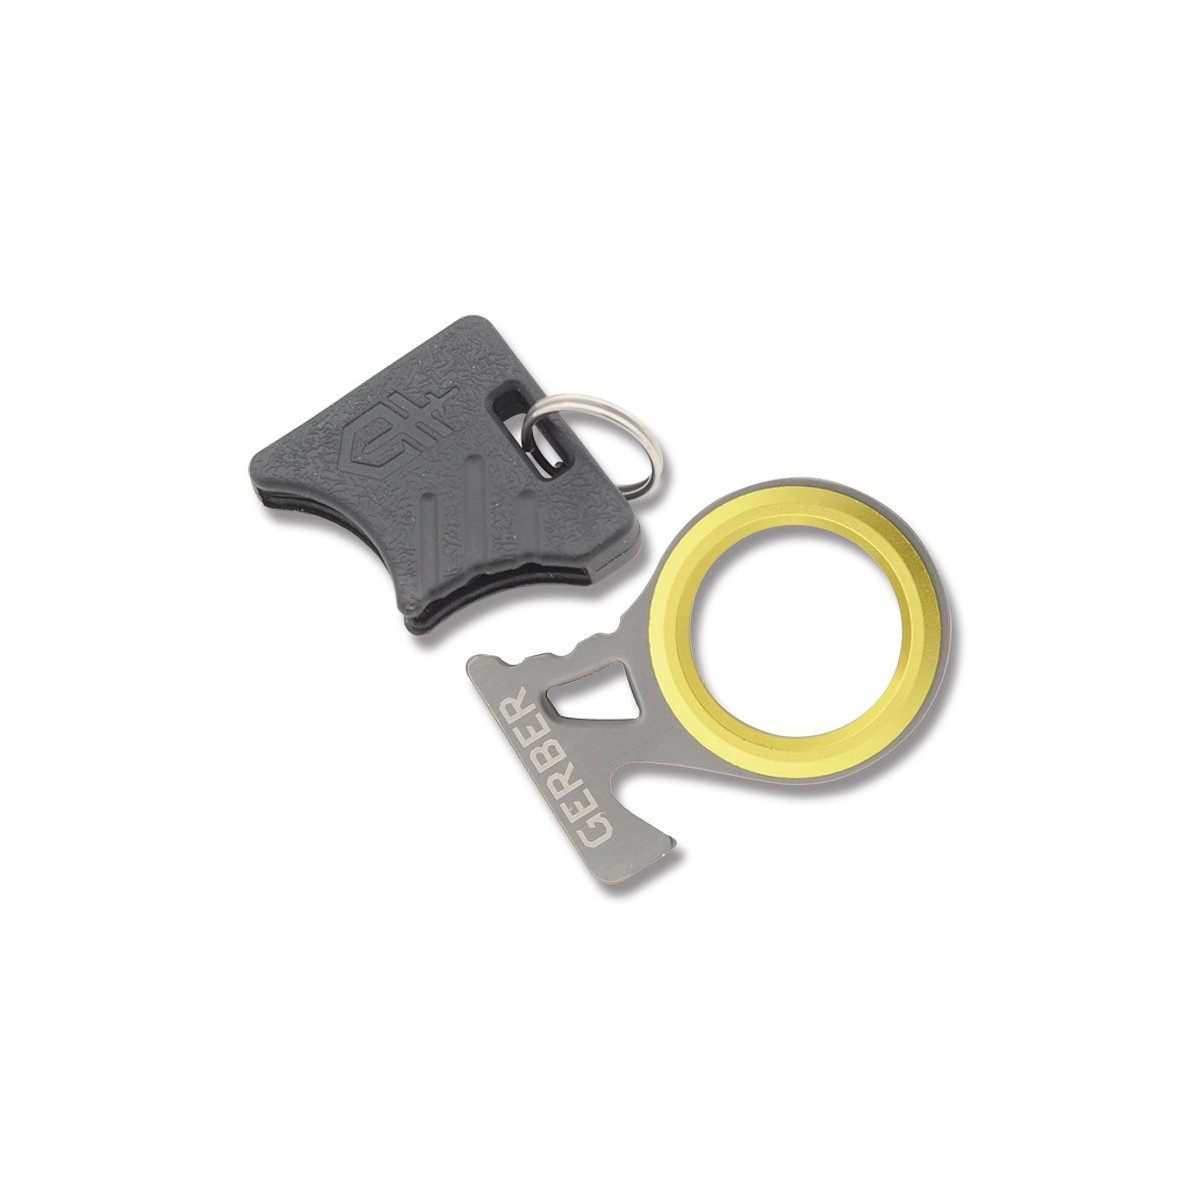 พวงกุญแจ อุปกรณ์ฉุกเฉิน Gerber GDC Hook Knife Emergency Keychain Tool (31-001695)